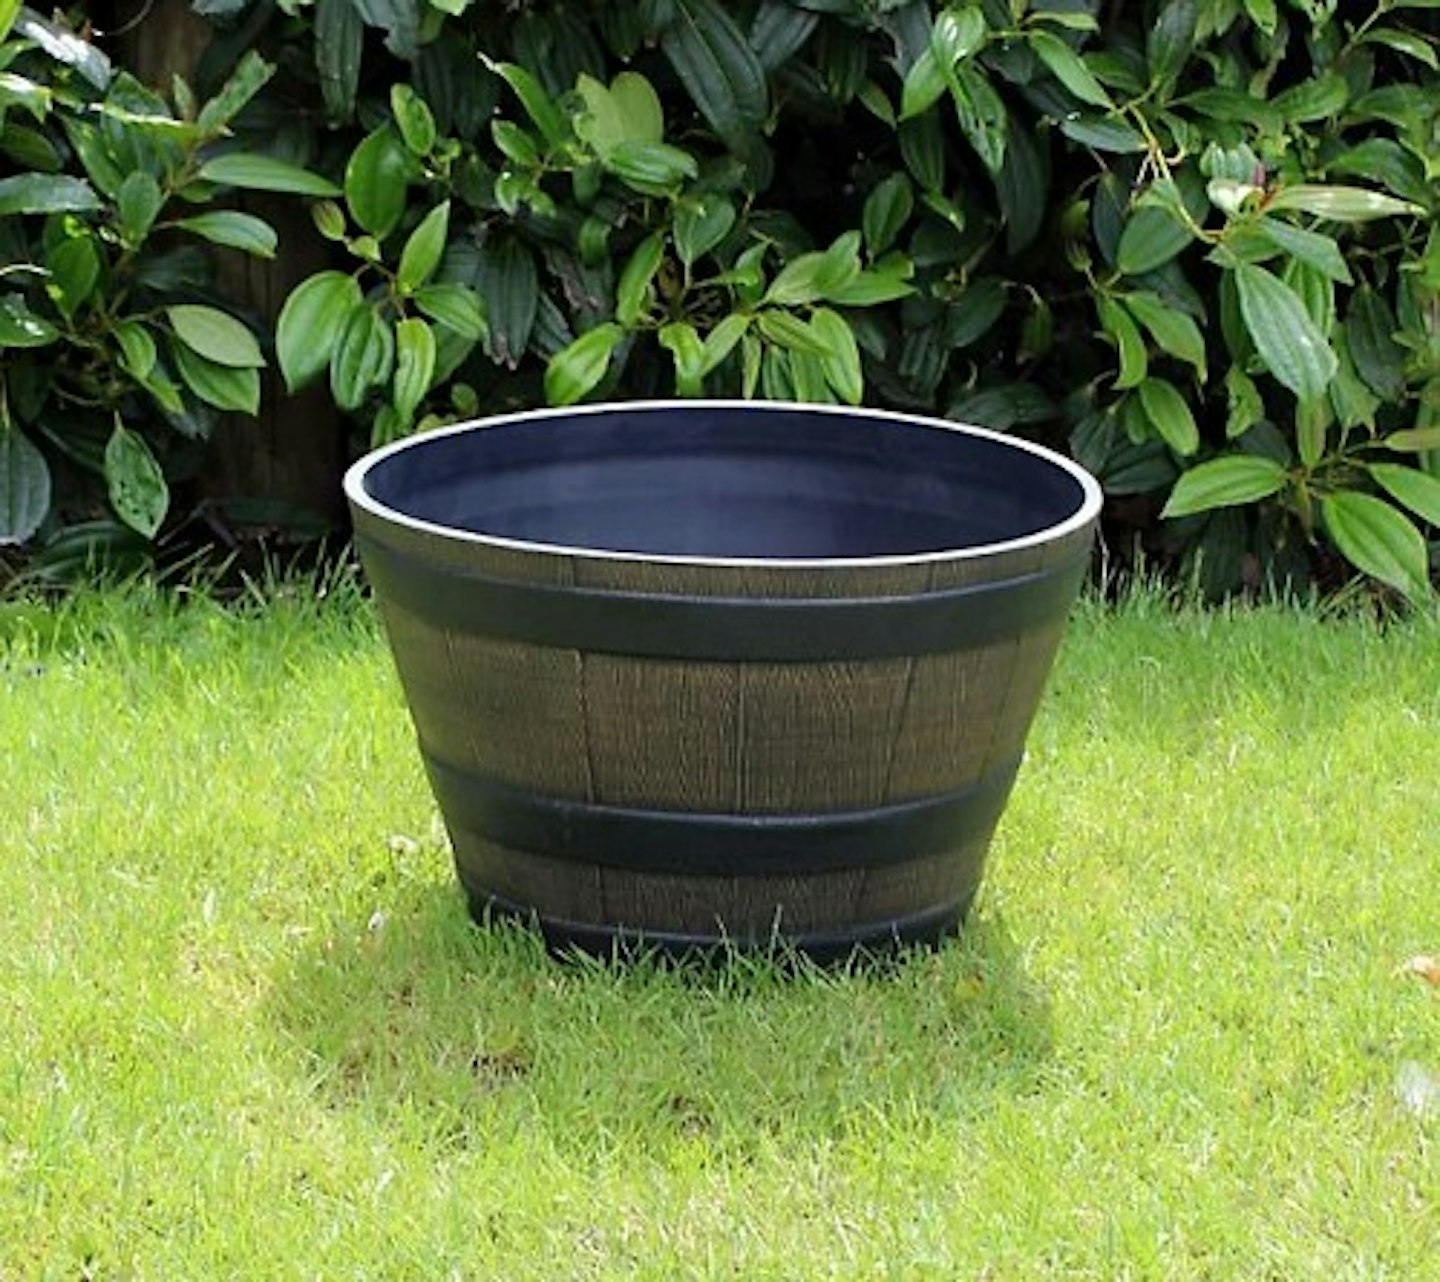 Large Oak Wood Effect Barrel Plastic Decorative Garden Patio Trough Plant Pot Planter